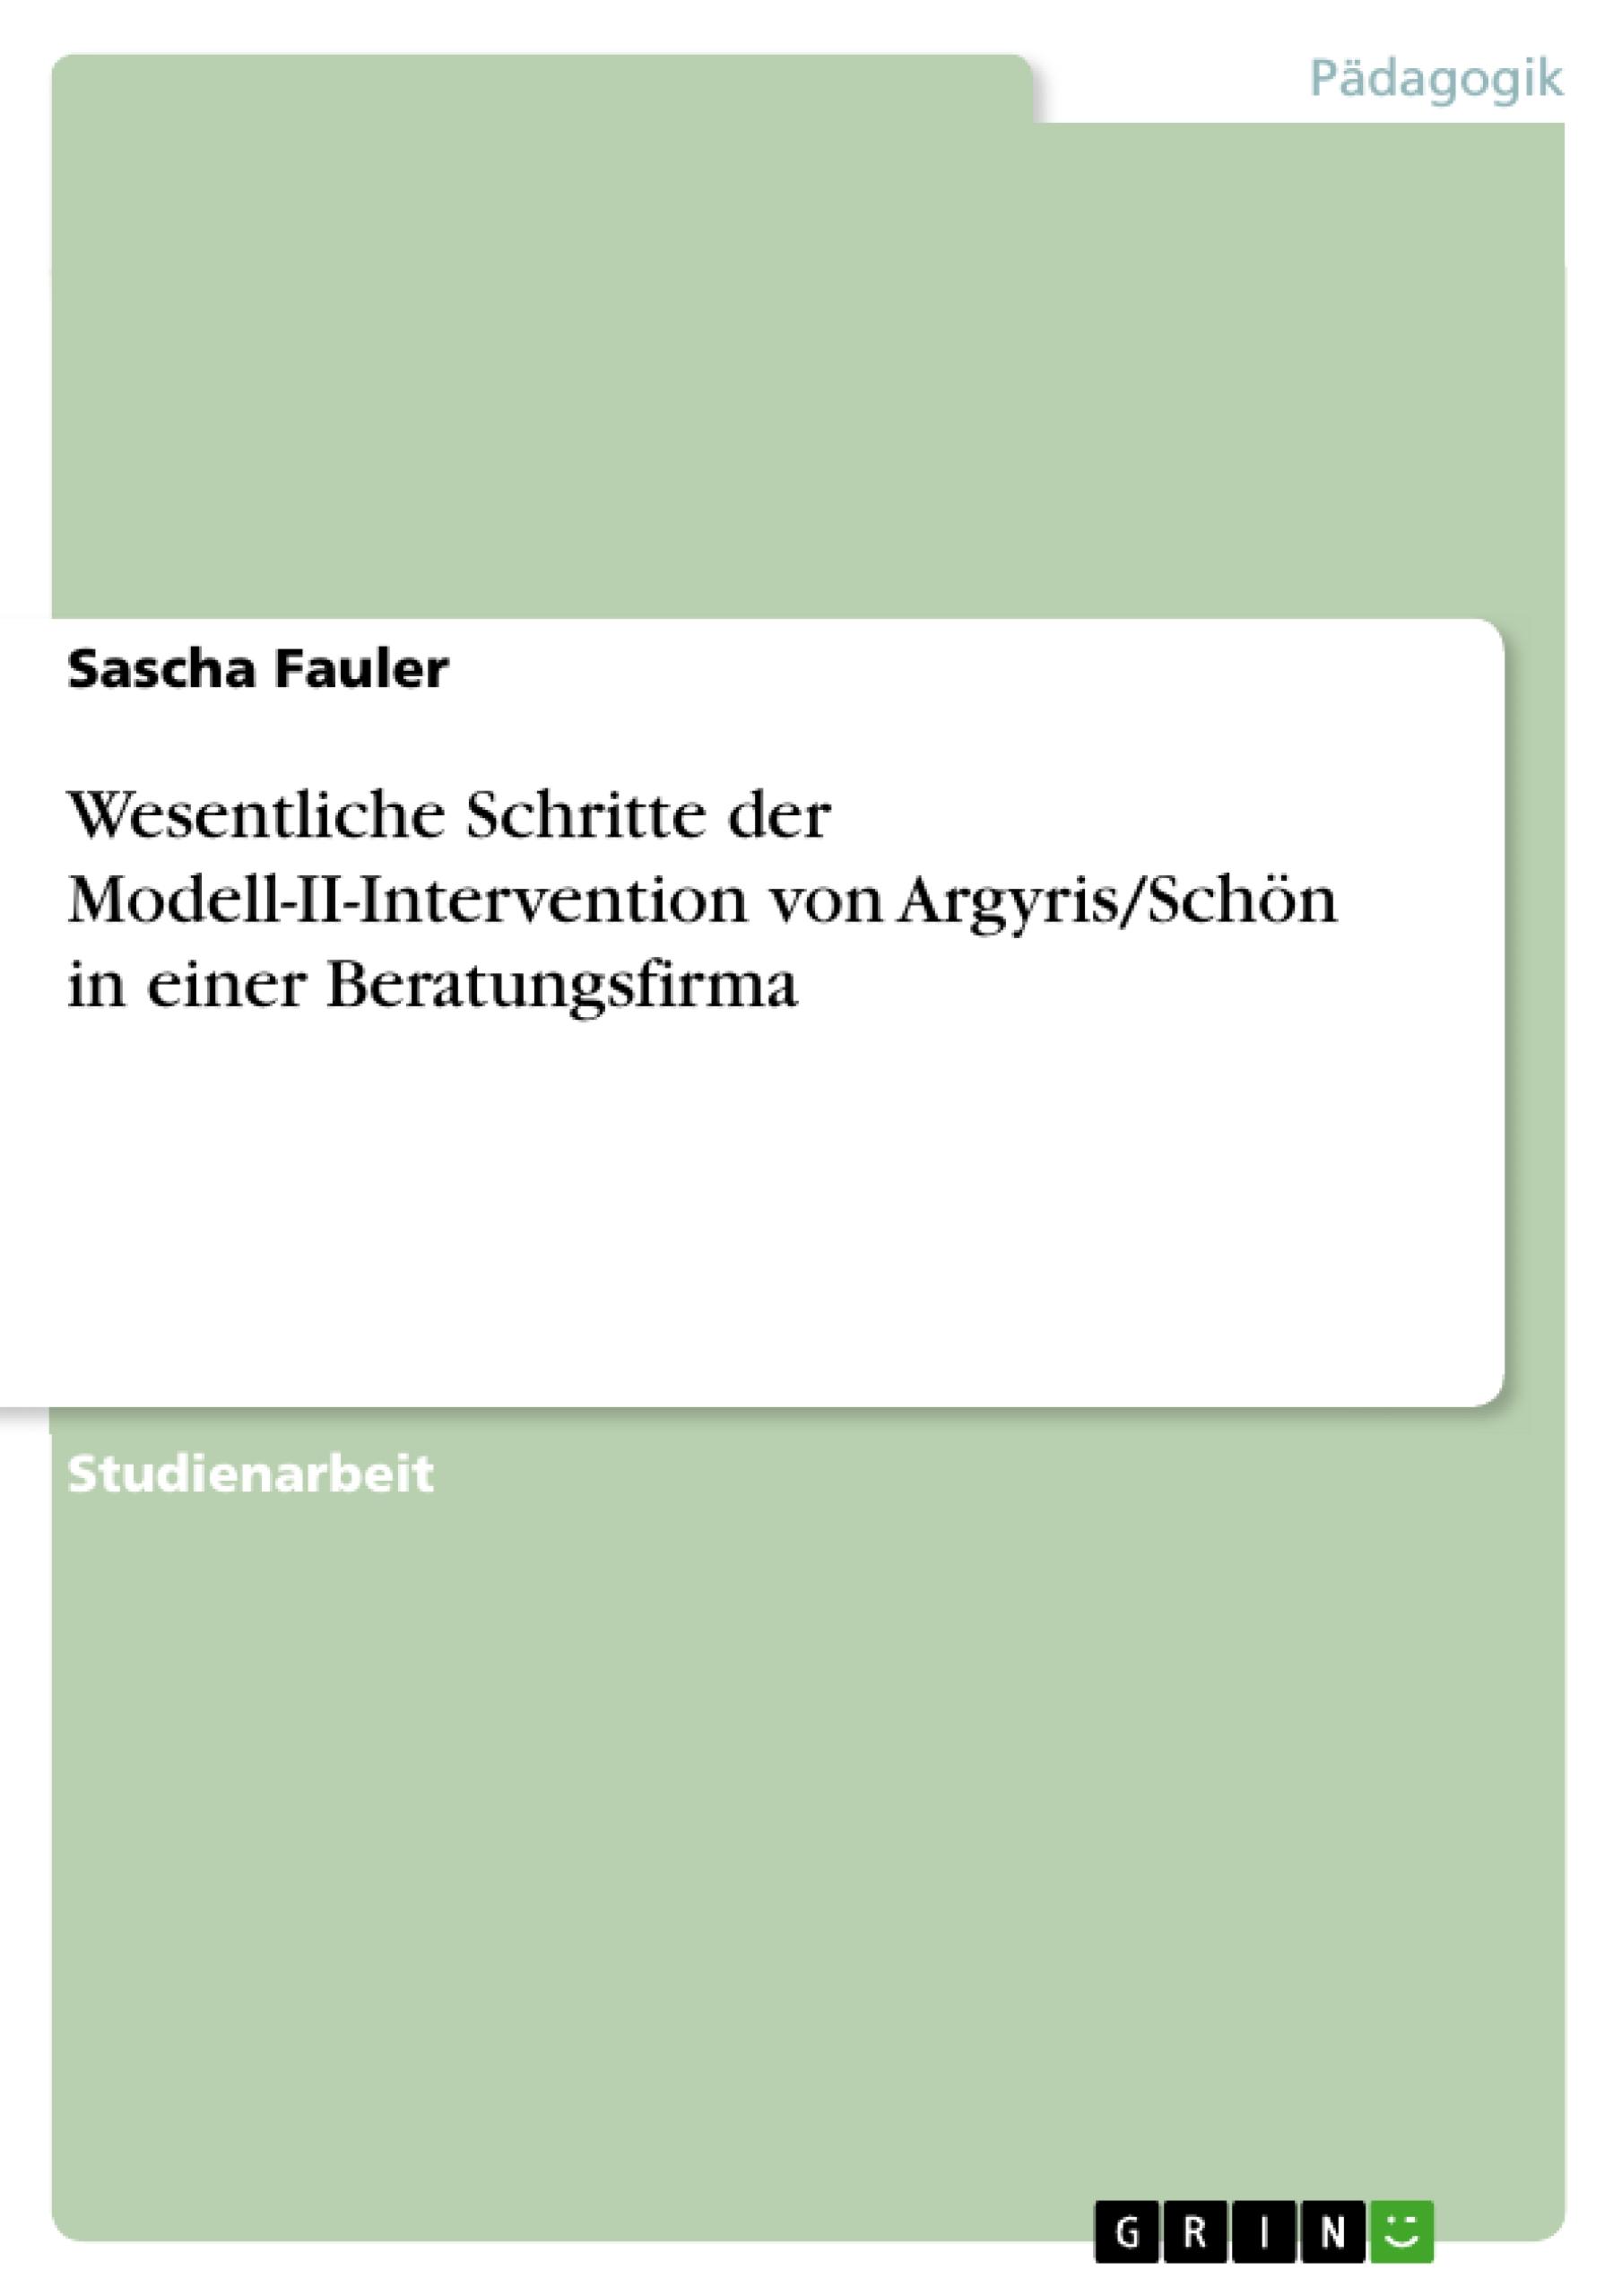 Wesentliche Schritte der Modell-II-Intervention von Argyris/Schön in einer Beratungsfirma  Sascha Fauler  Taschenbuch  Paperback  Deutsch  2010 - Fauler, Sascha